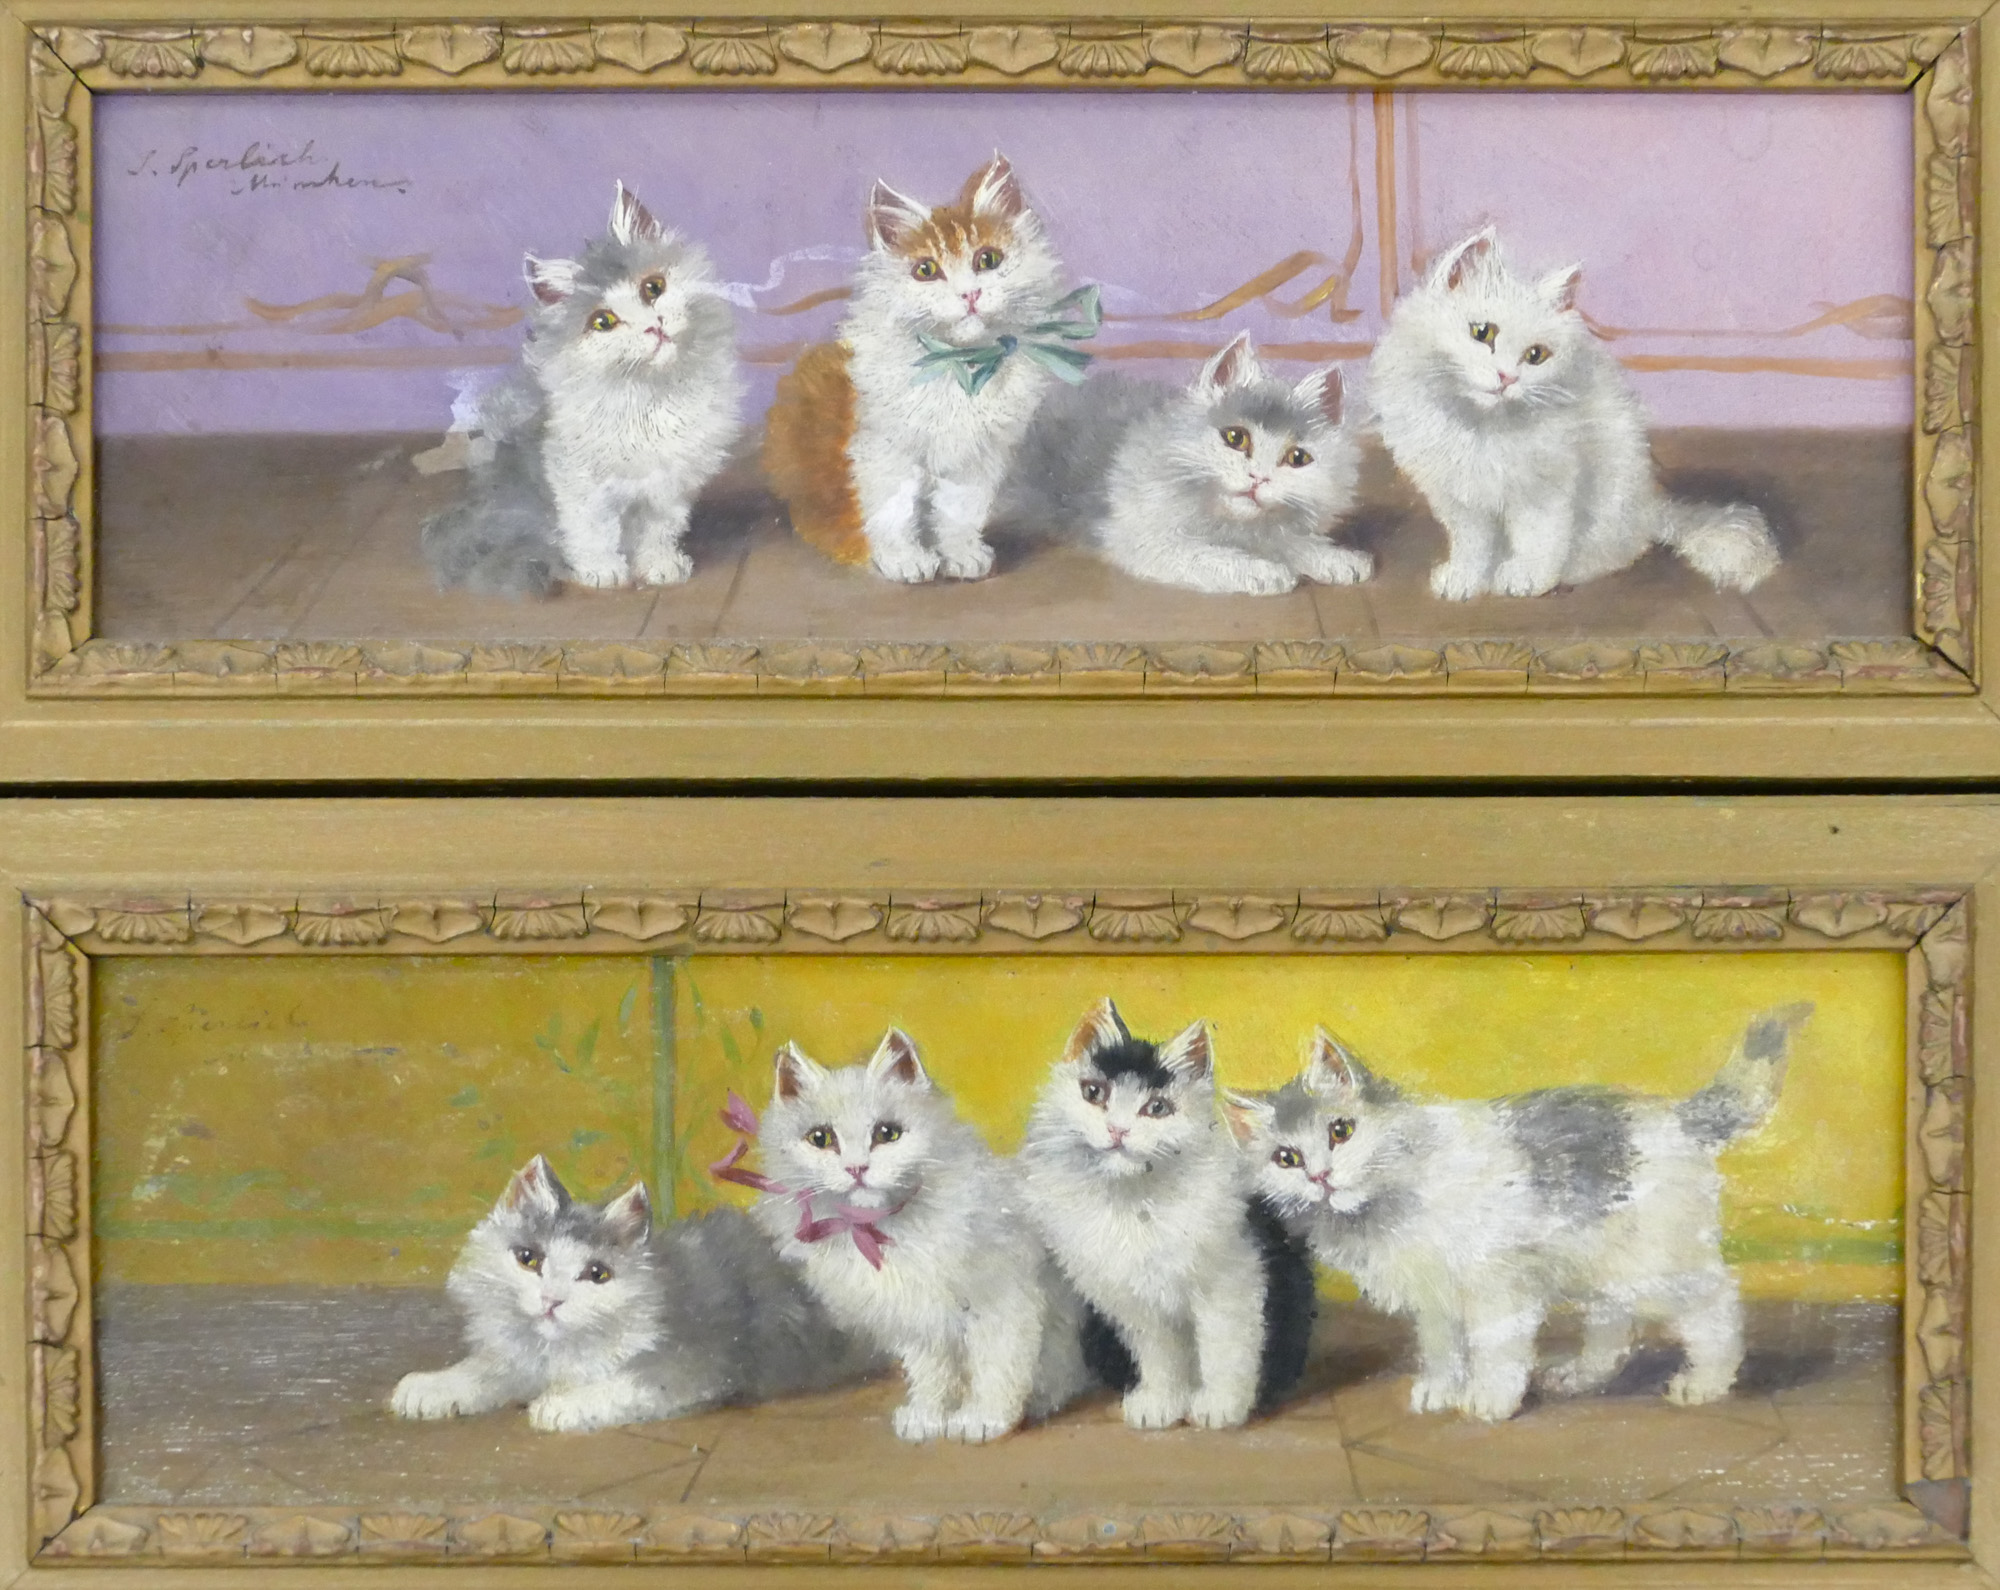 Sophie Sperlich (1863-1906 German) Cats